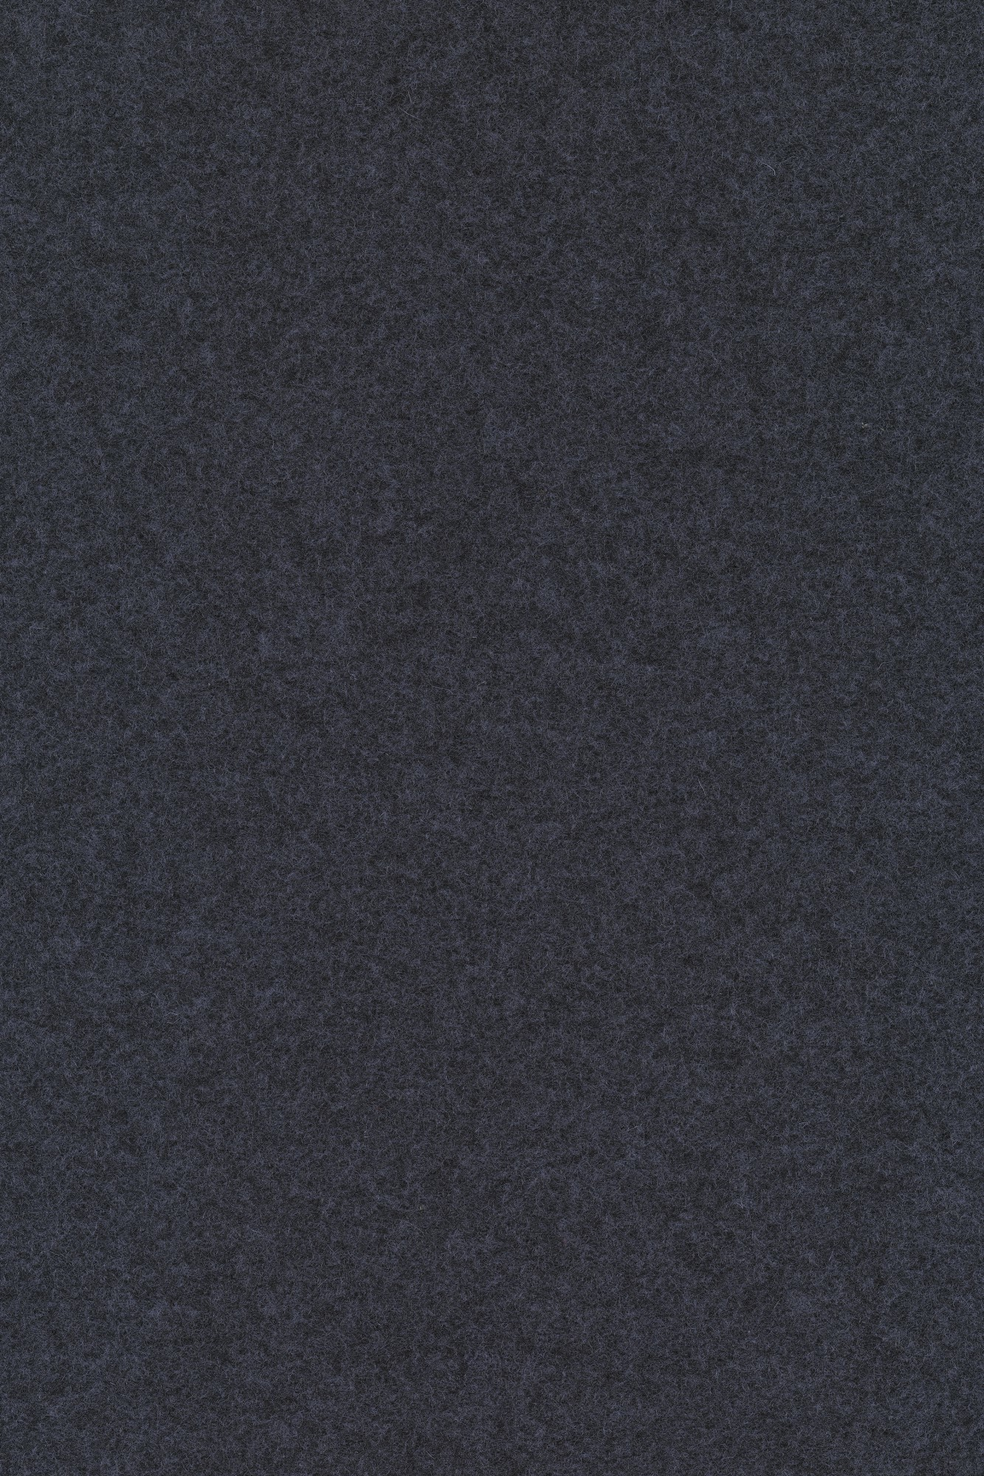 Fabric sample Divina Melange 3 687 grey